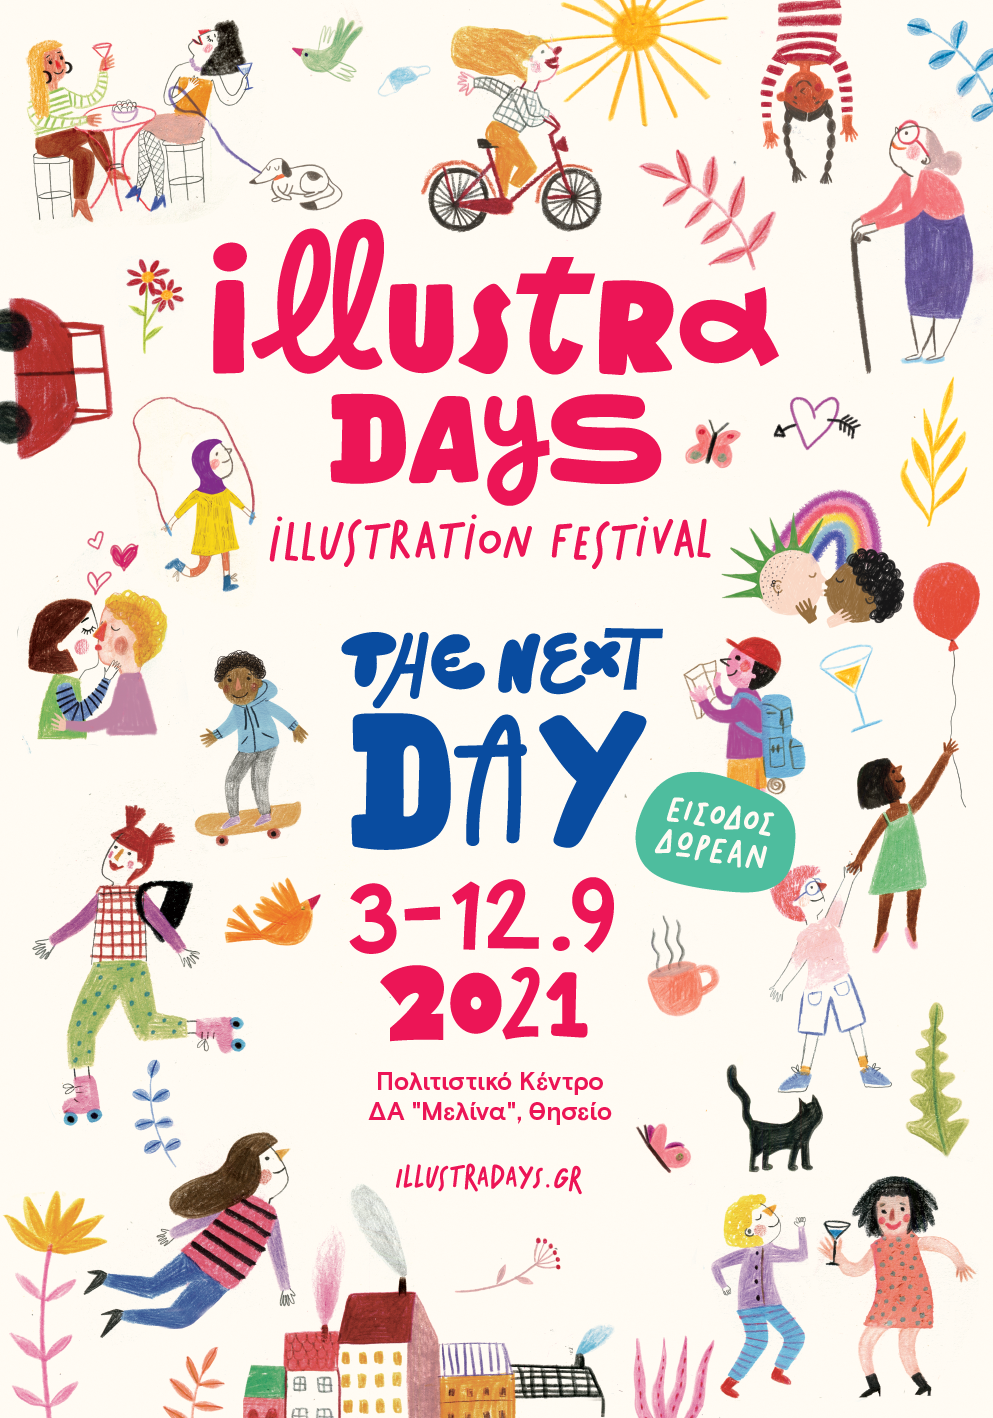 Η αφίσα του illustradays 2021: the Next Day